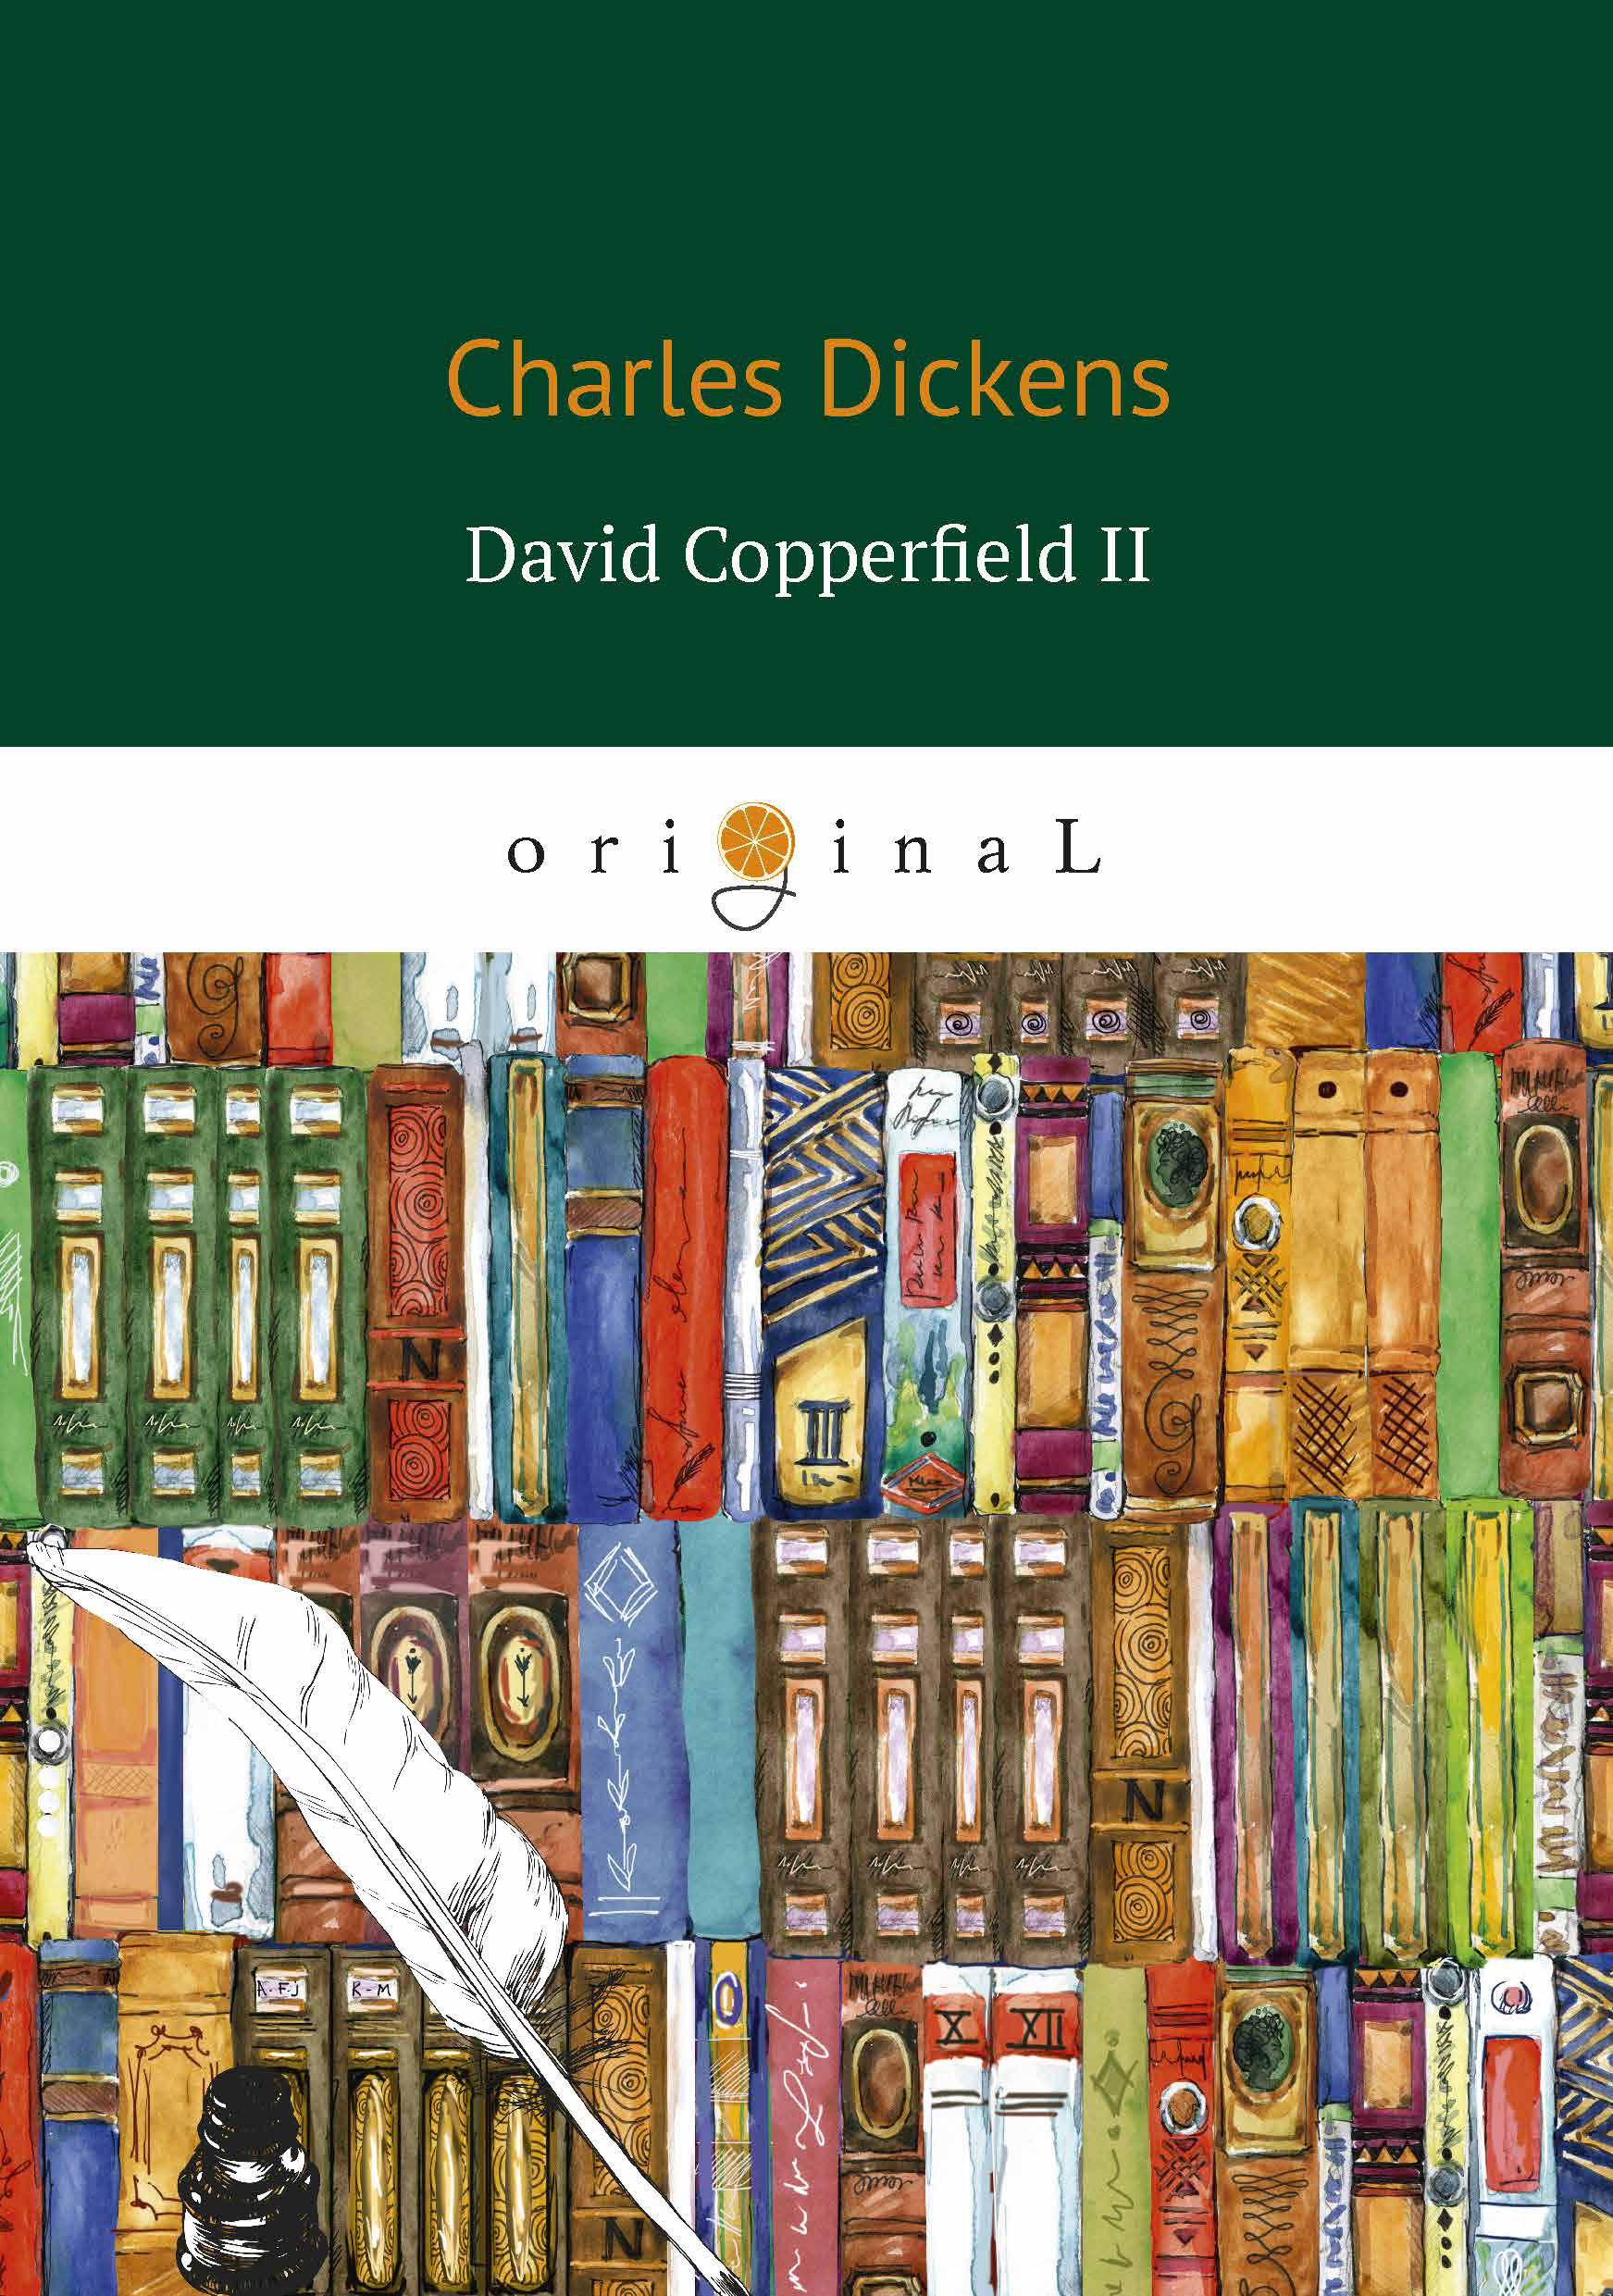 Книга David Copperfield II из серии , созданная Чарльз Диккенс, может относится к жанру Зарубежная классика, Литература 19 века. Стоимость электронной книги David Copperfield II с идентификатором 32543775 составляет 199.00 руб.